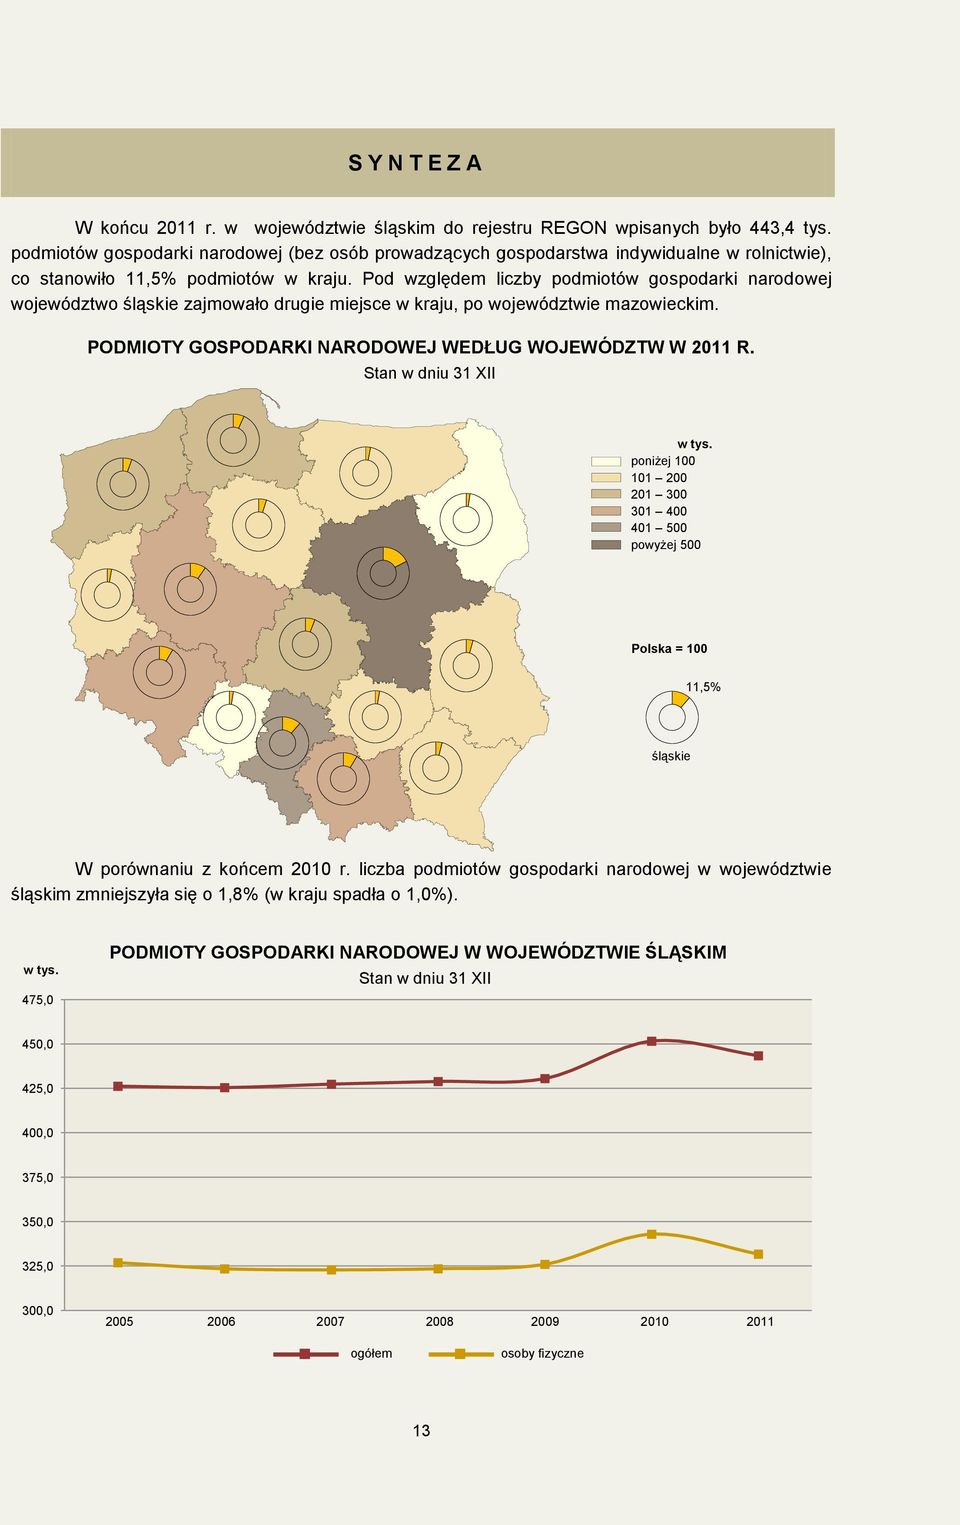 Pod względem liczby podmiotów gospodarki narodowej województwo śląskie zajmowało drugie miejsce w kraju, po województwie mazowieckim. PODMIOTY GOSPODARKI NARODOWEJ WEDŁUG WOJEWÓDZTW W 2011 R. w tys.